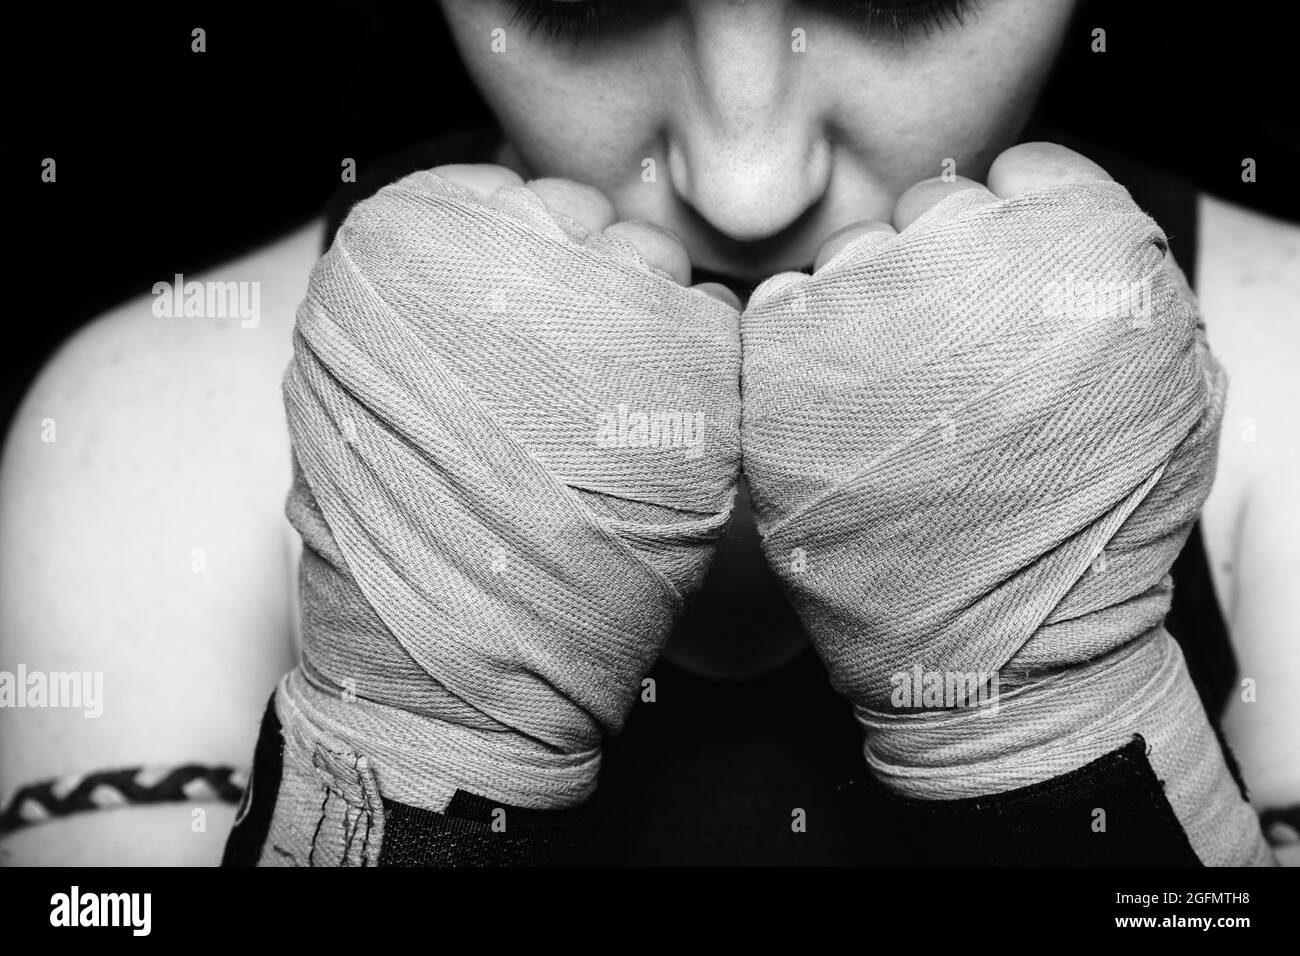 Muay Thai Fighter Girl se préparant à la bataille. Gros plan portrait noir et blanc sur fond noir. Banque D'Images